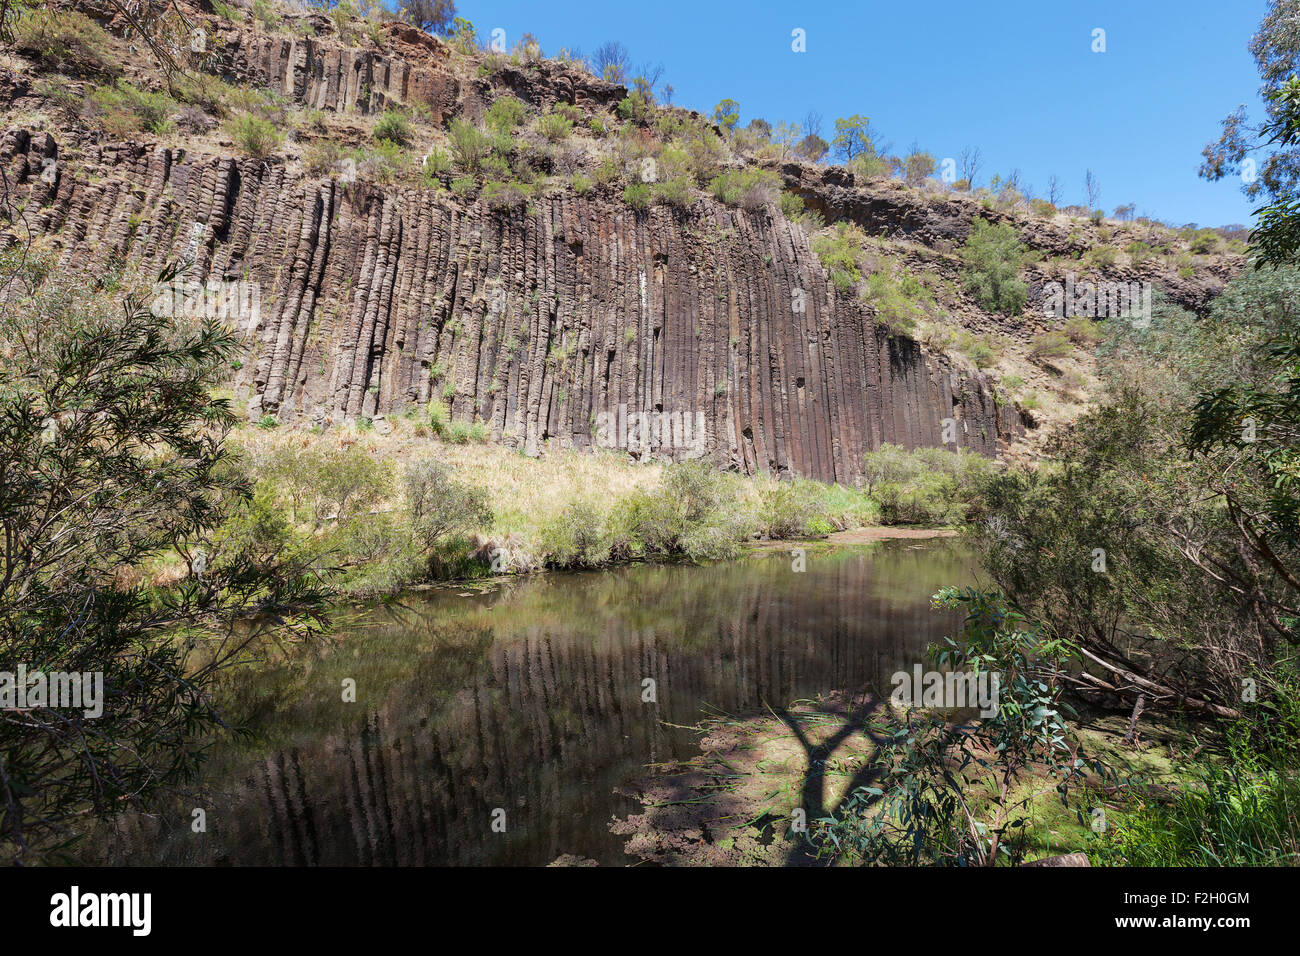 Organo a canne formazione rocciosa a parco nazionale, Australia. Foto Stock